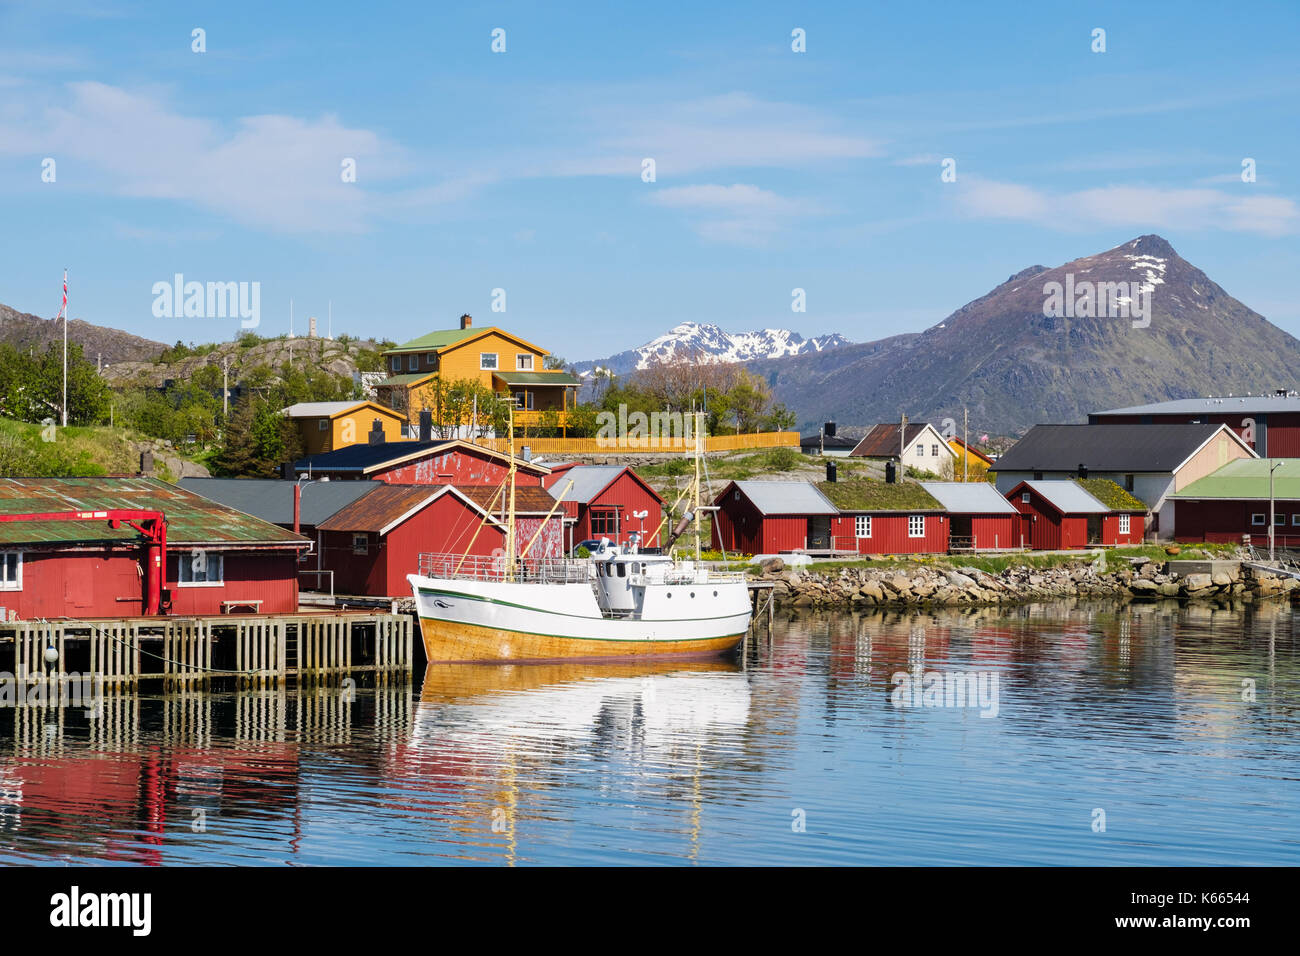 Barca ormeggiata in porto con tipici norvegesi Rorbu capanne nel villaggio di pescatori. Ballstad, Vestvågøya isola, isole Lofoten, Nordland, Norvegia Foto Stock